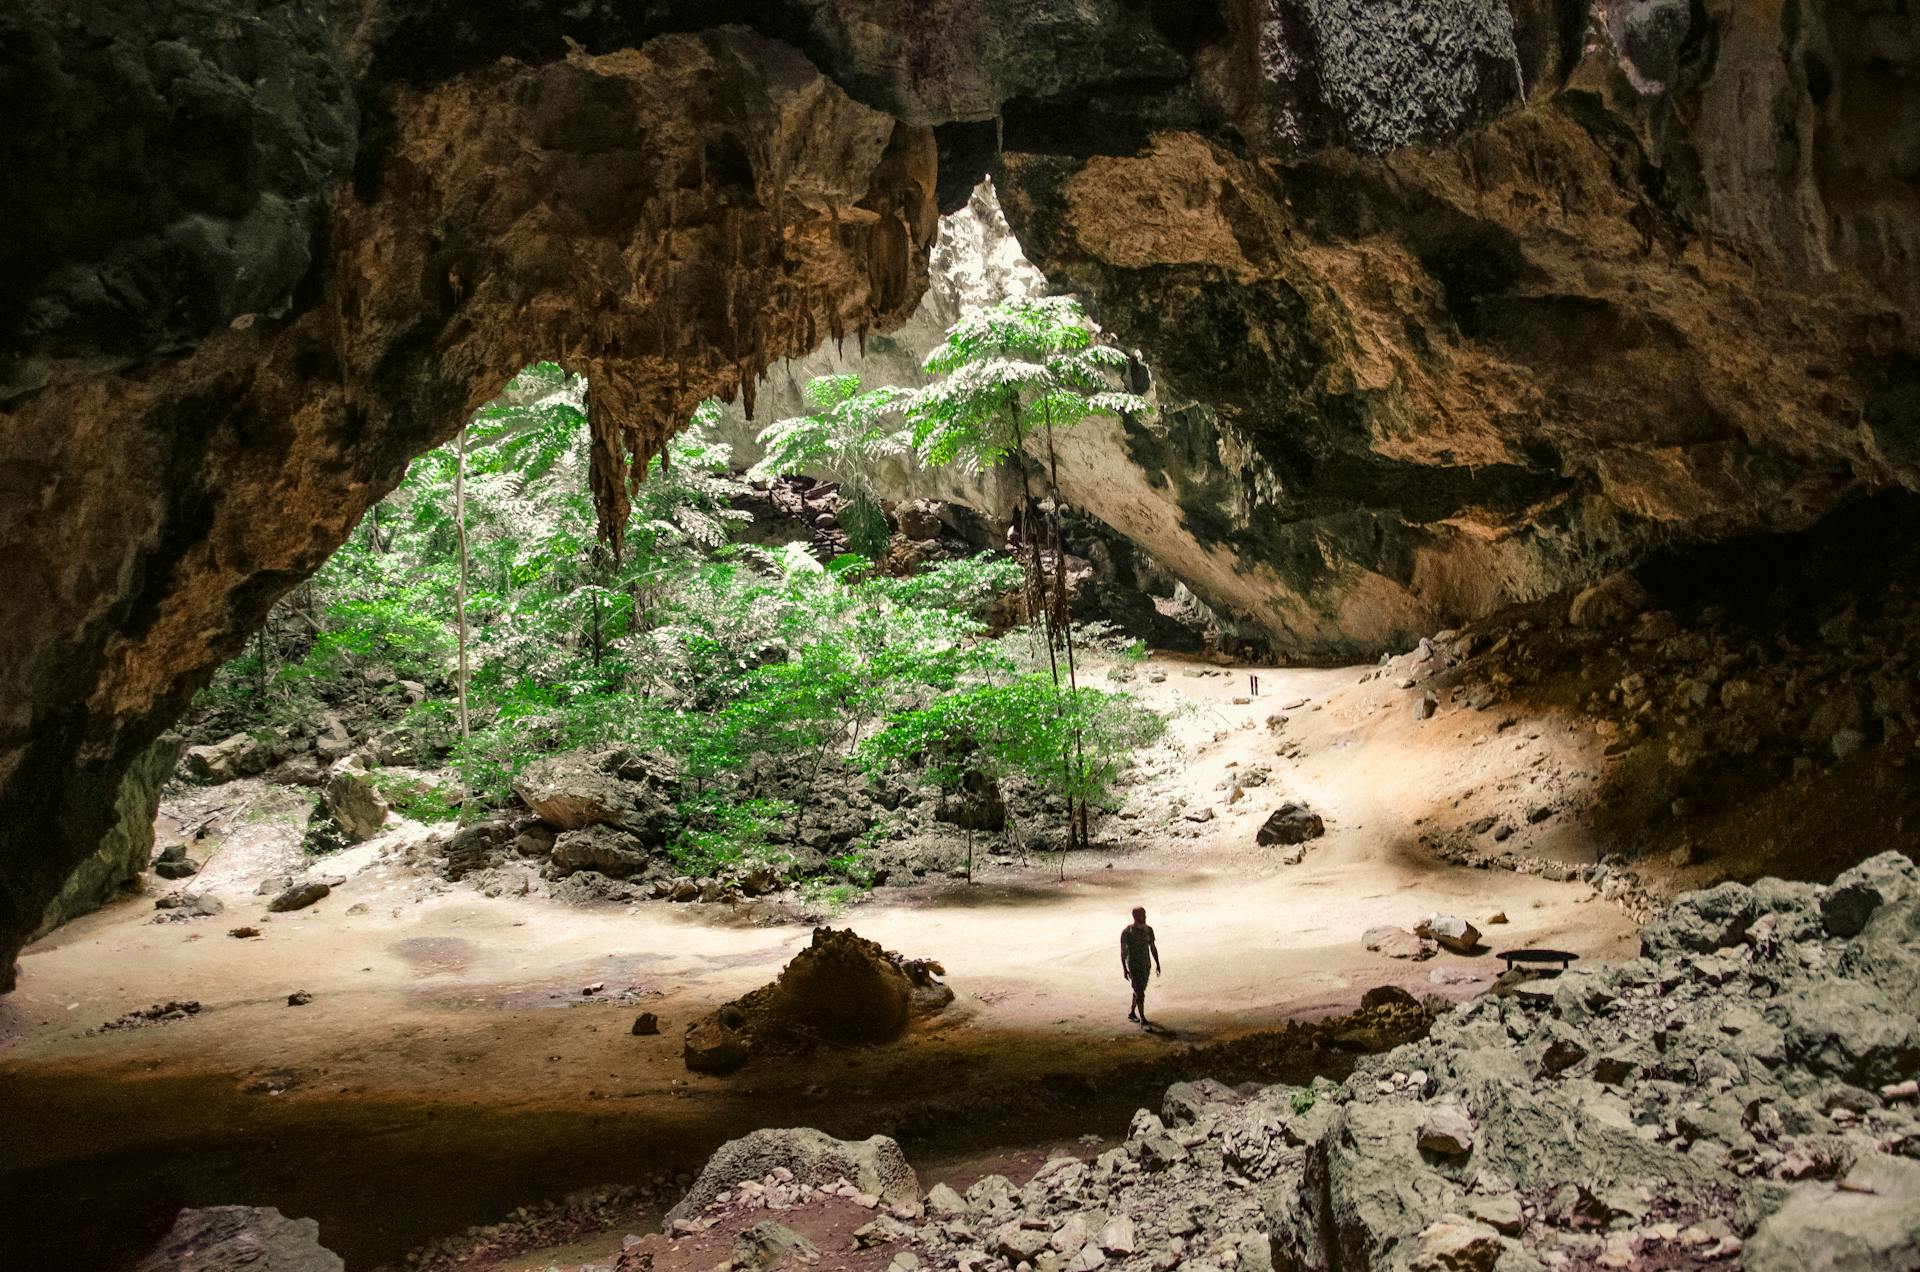 Phraya Nakhon Cave, Khao Sam Roi Yot National Park in the Prachuap Khiri Khan Province of Thailand